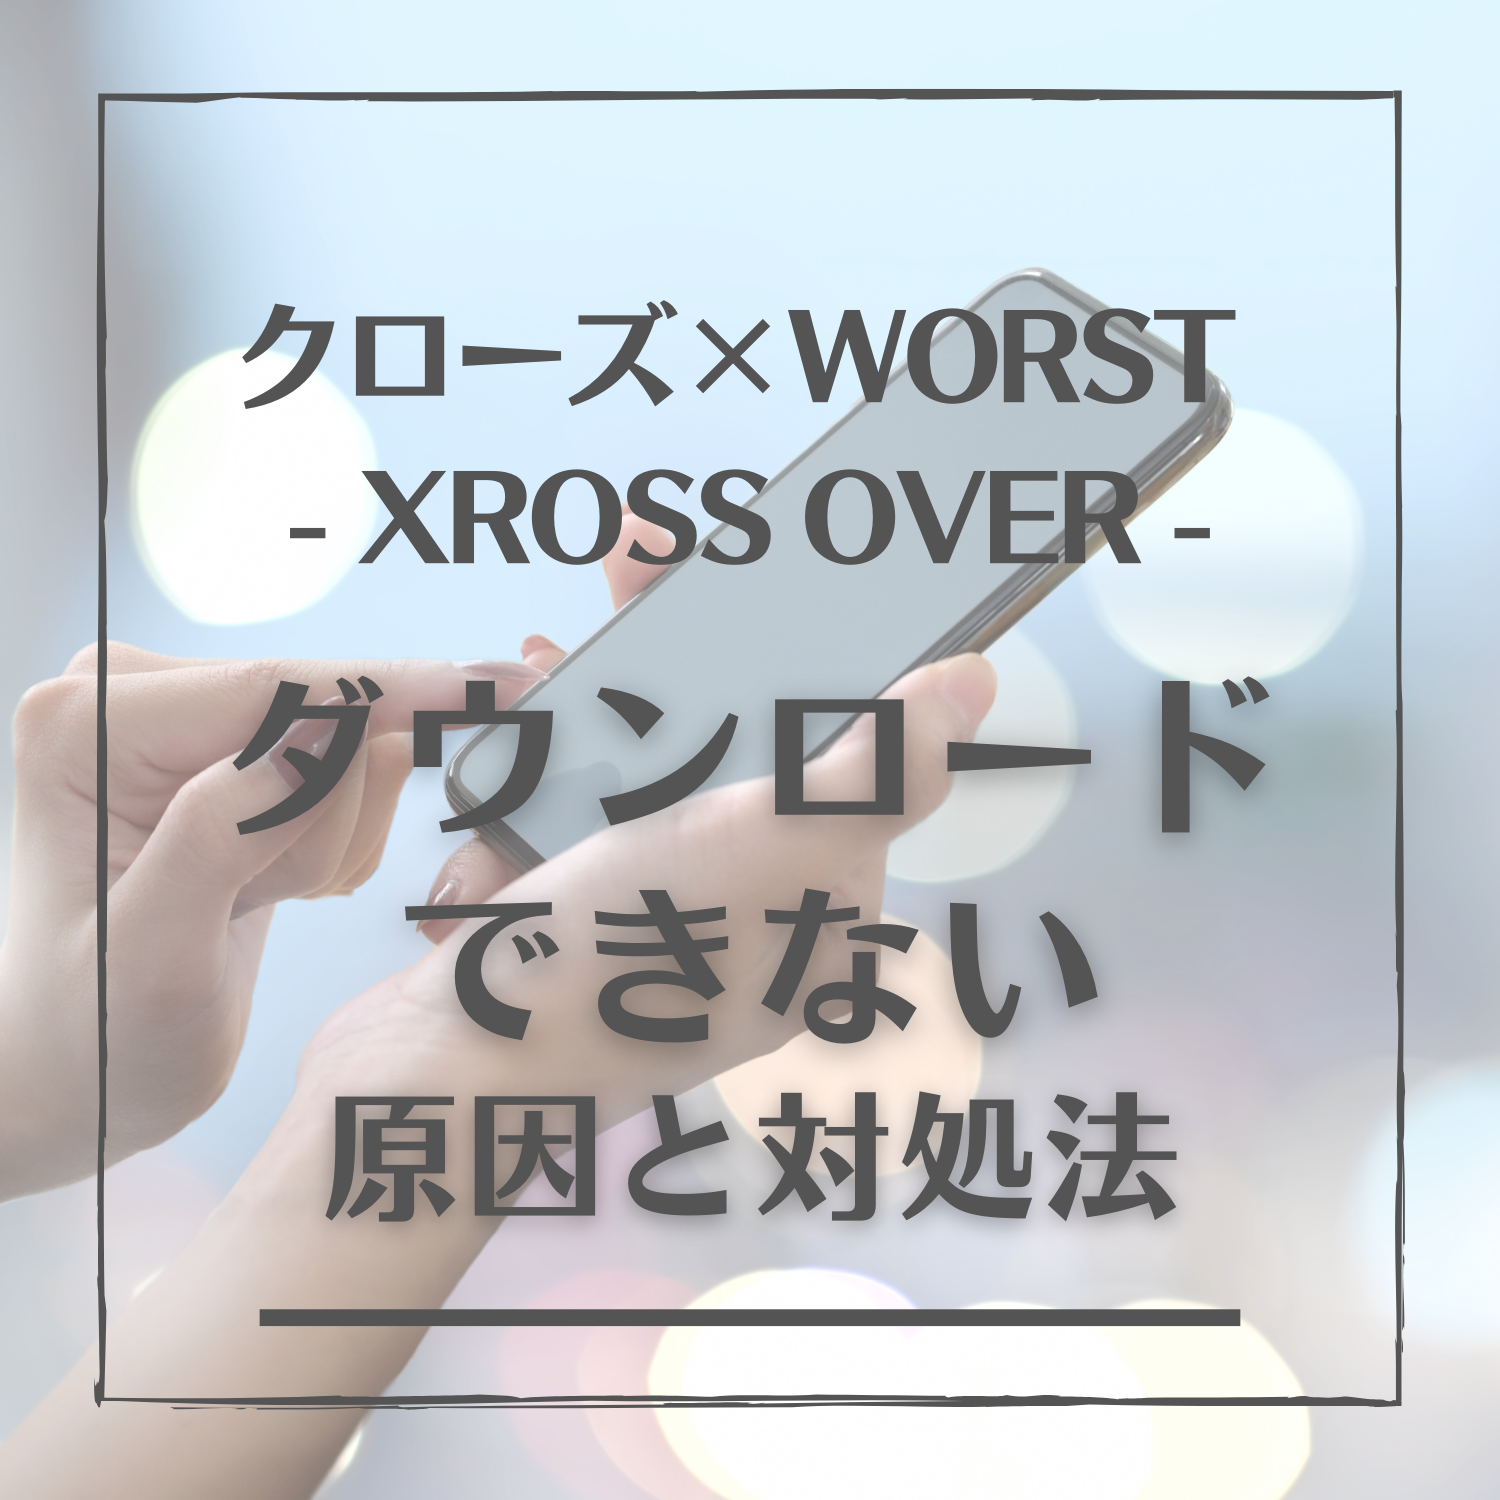 クローズ×WORST - XROSS OVER -(クロクロ)をダウンロードできない原因と対処法とは #クロクロ